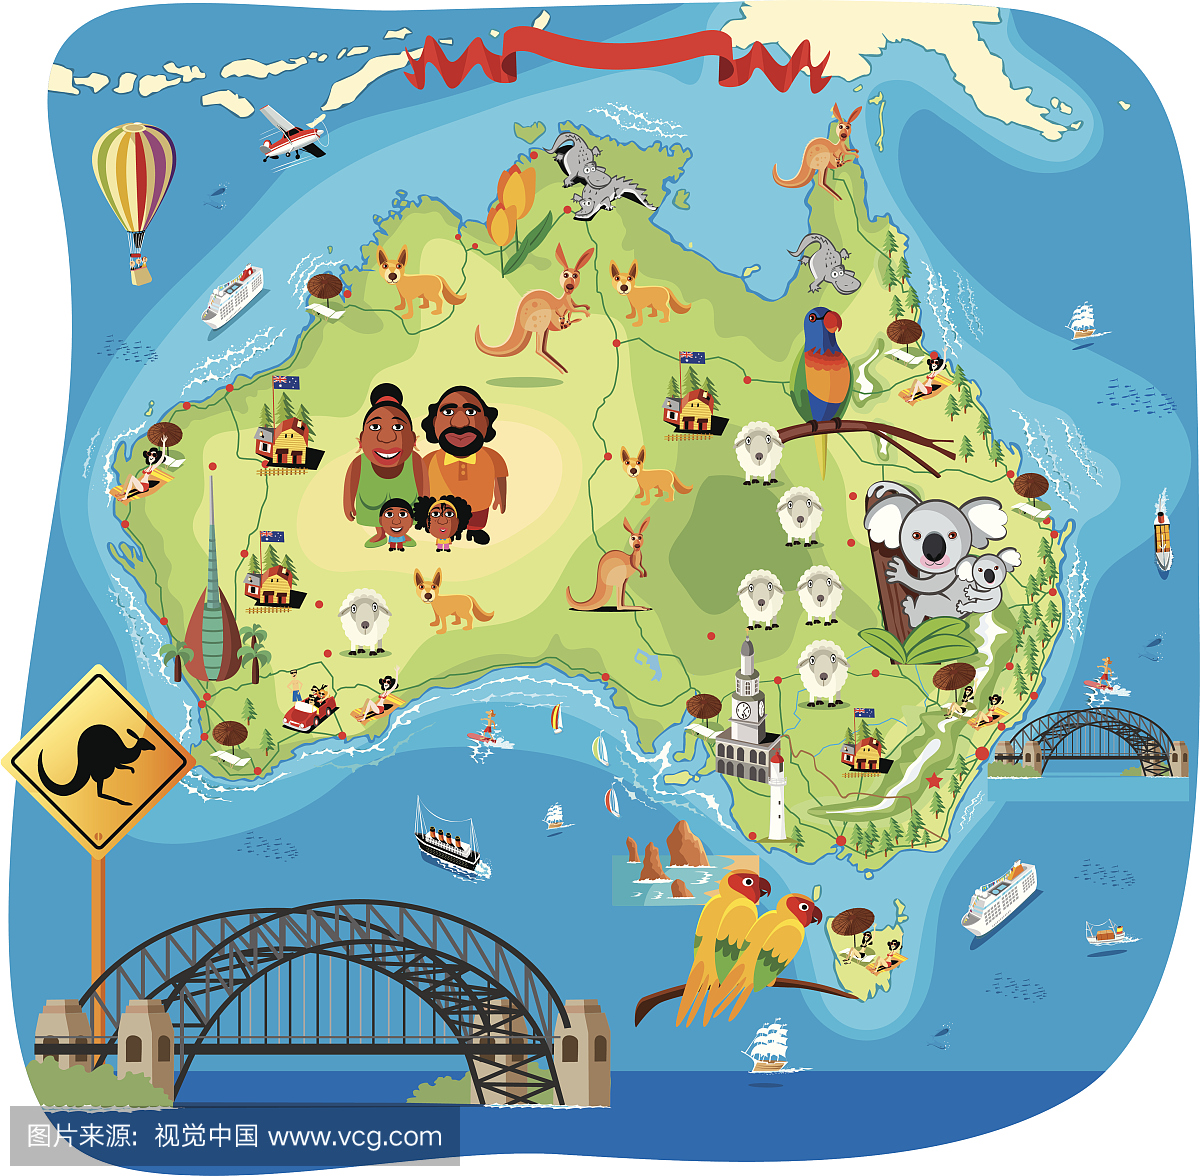 澳大利亚地图 澳大利亚旅游地图 澳大利亚旅游路线 澳洲旅游地图 澳洲地图 澳大利亚的城市 澳大利亚旅游景点 澳大利亚首都 澳大利亚地理位置 澳大利亚墨尔本 澳大利亚旅游资讯网